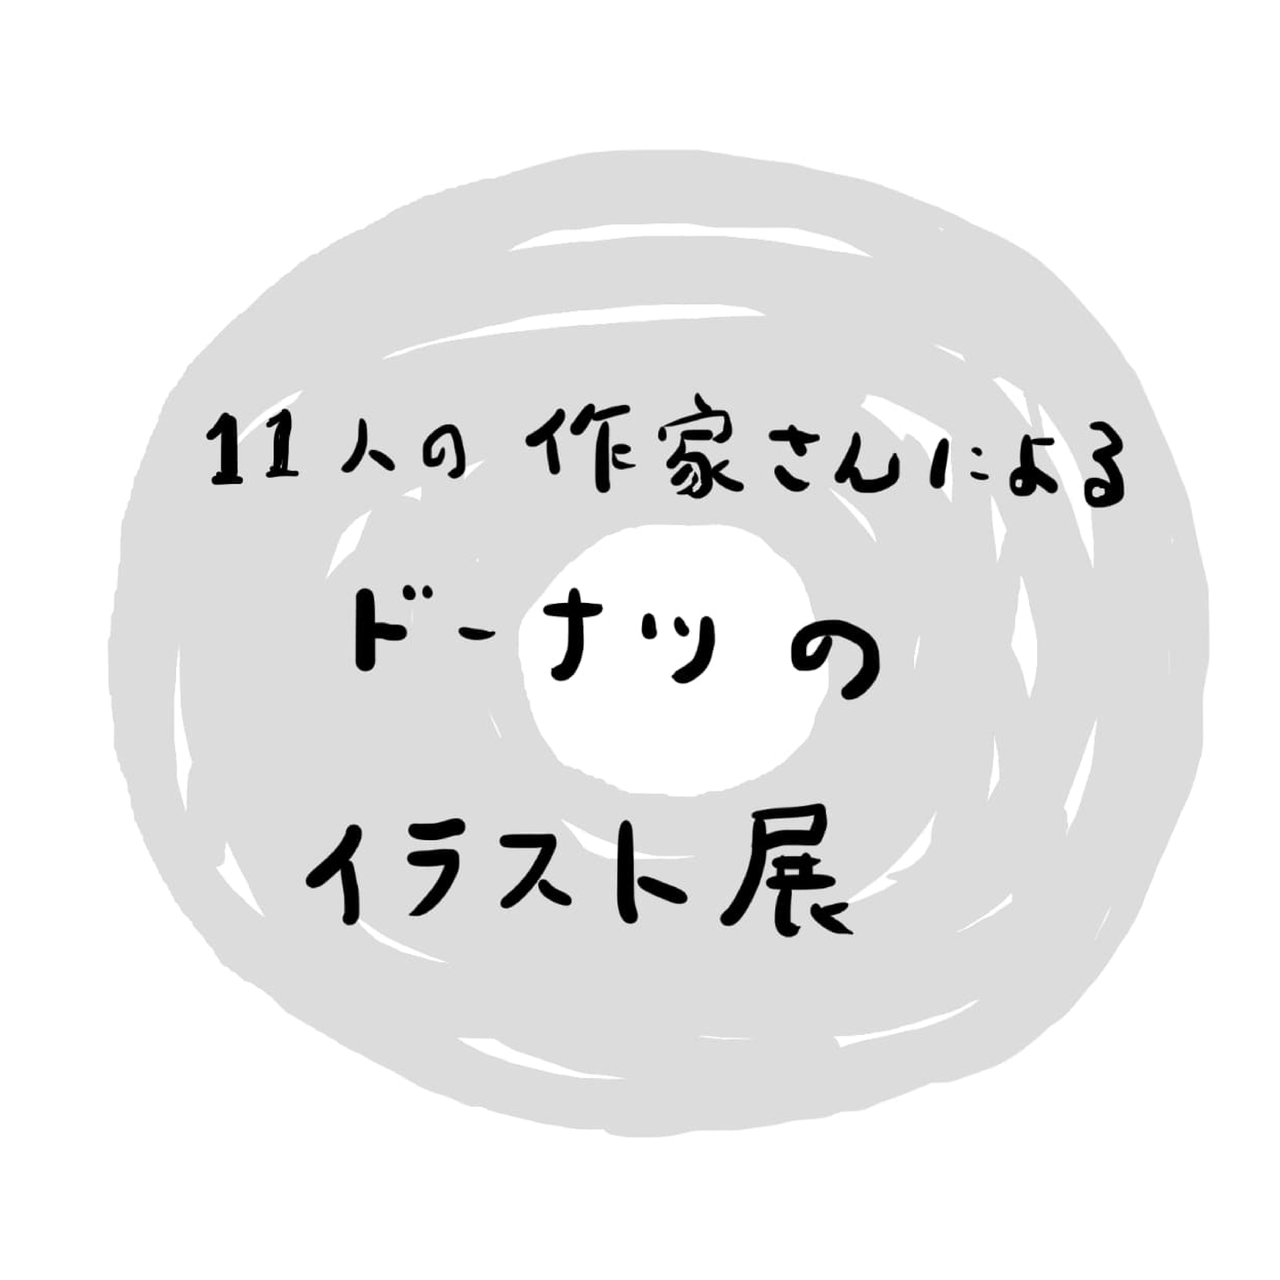 タナビケ Tanabike 11人の作家さんによるドーナツのイラスト展 1 23 Wed 2 9 Sun